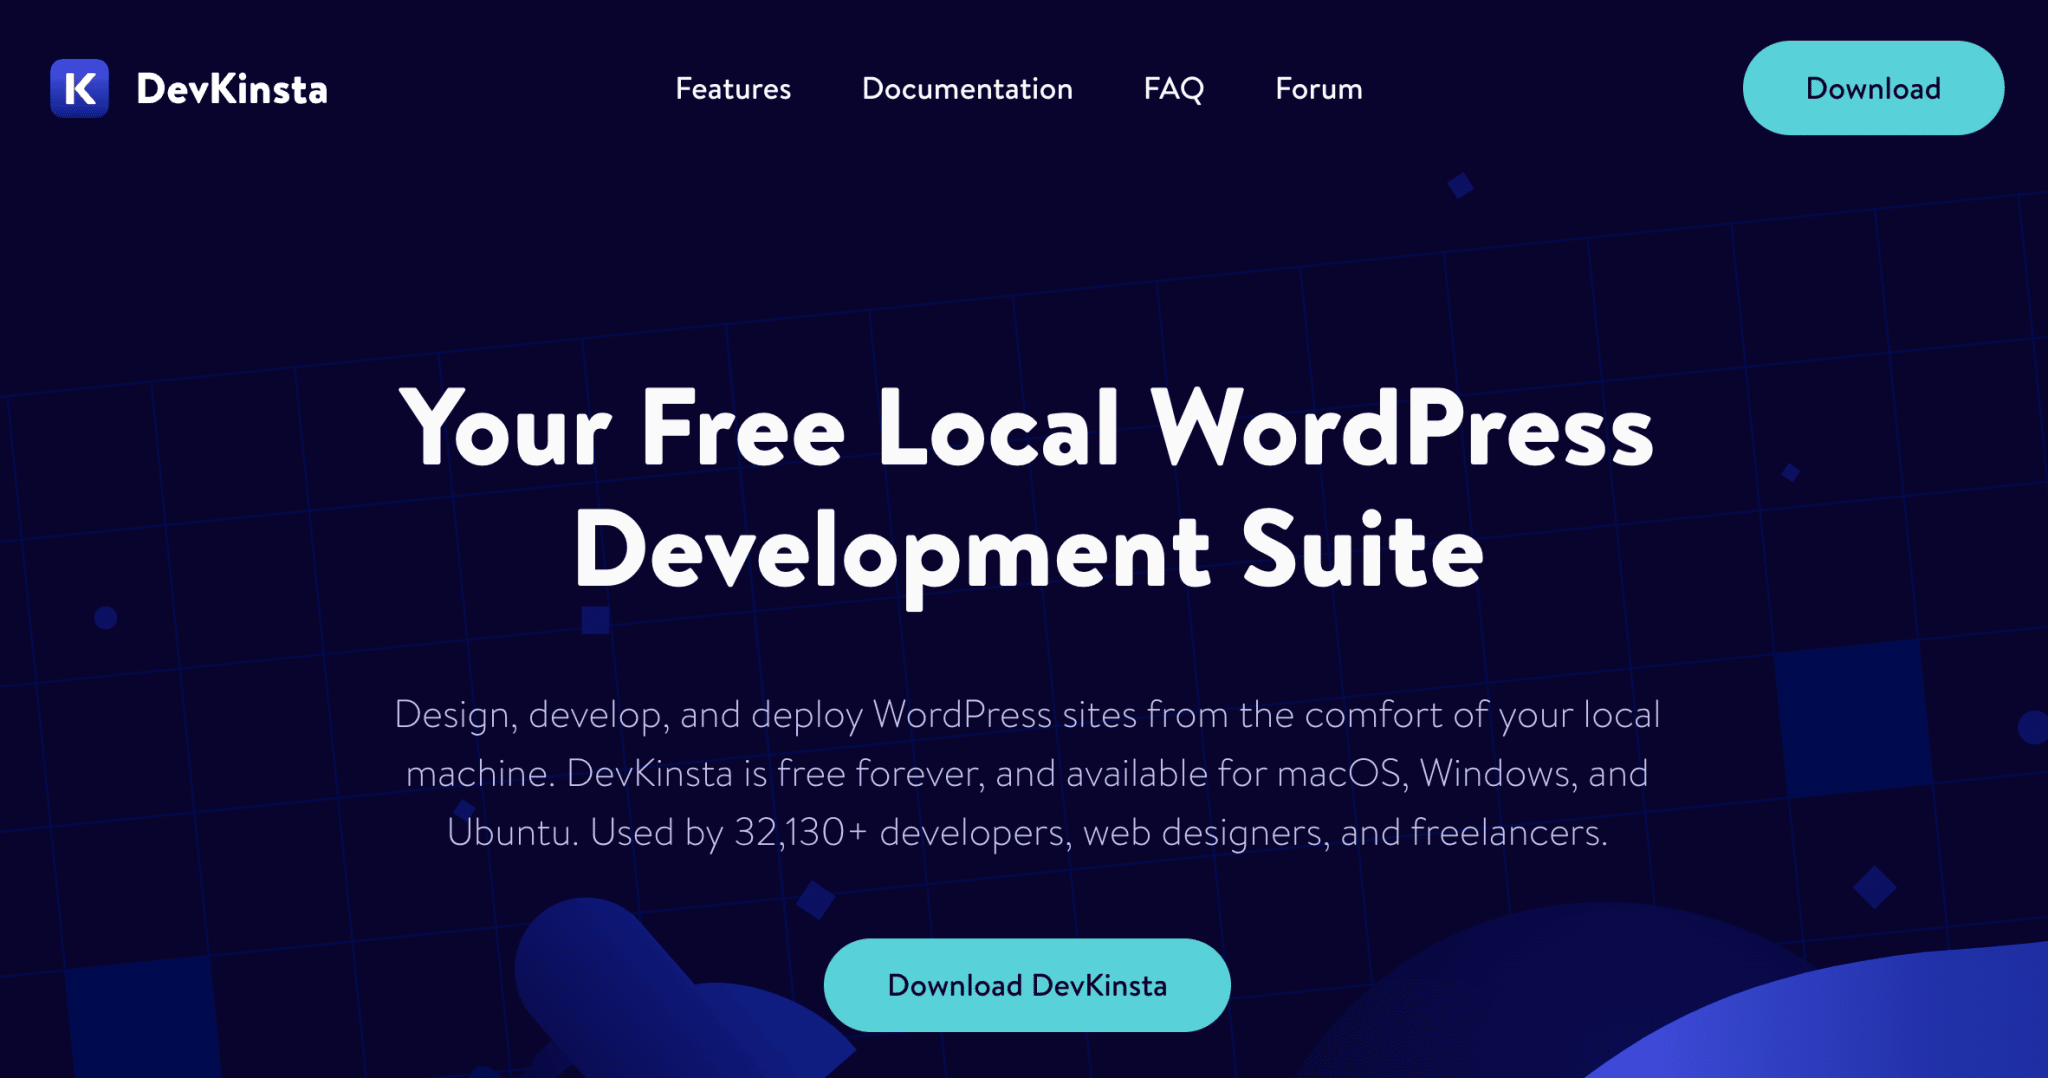 DevKinsta is a local WordPress development suite.